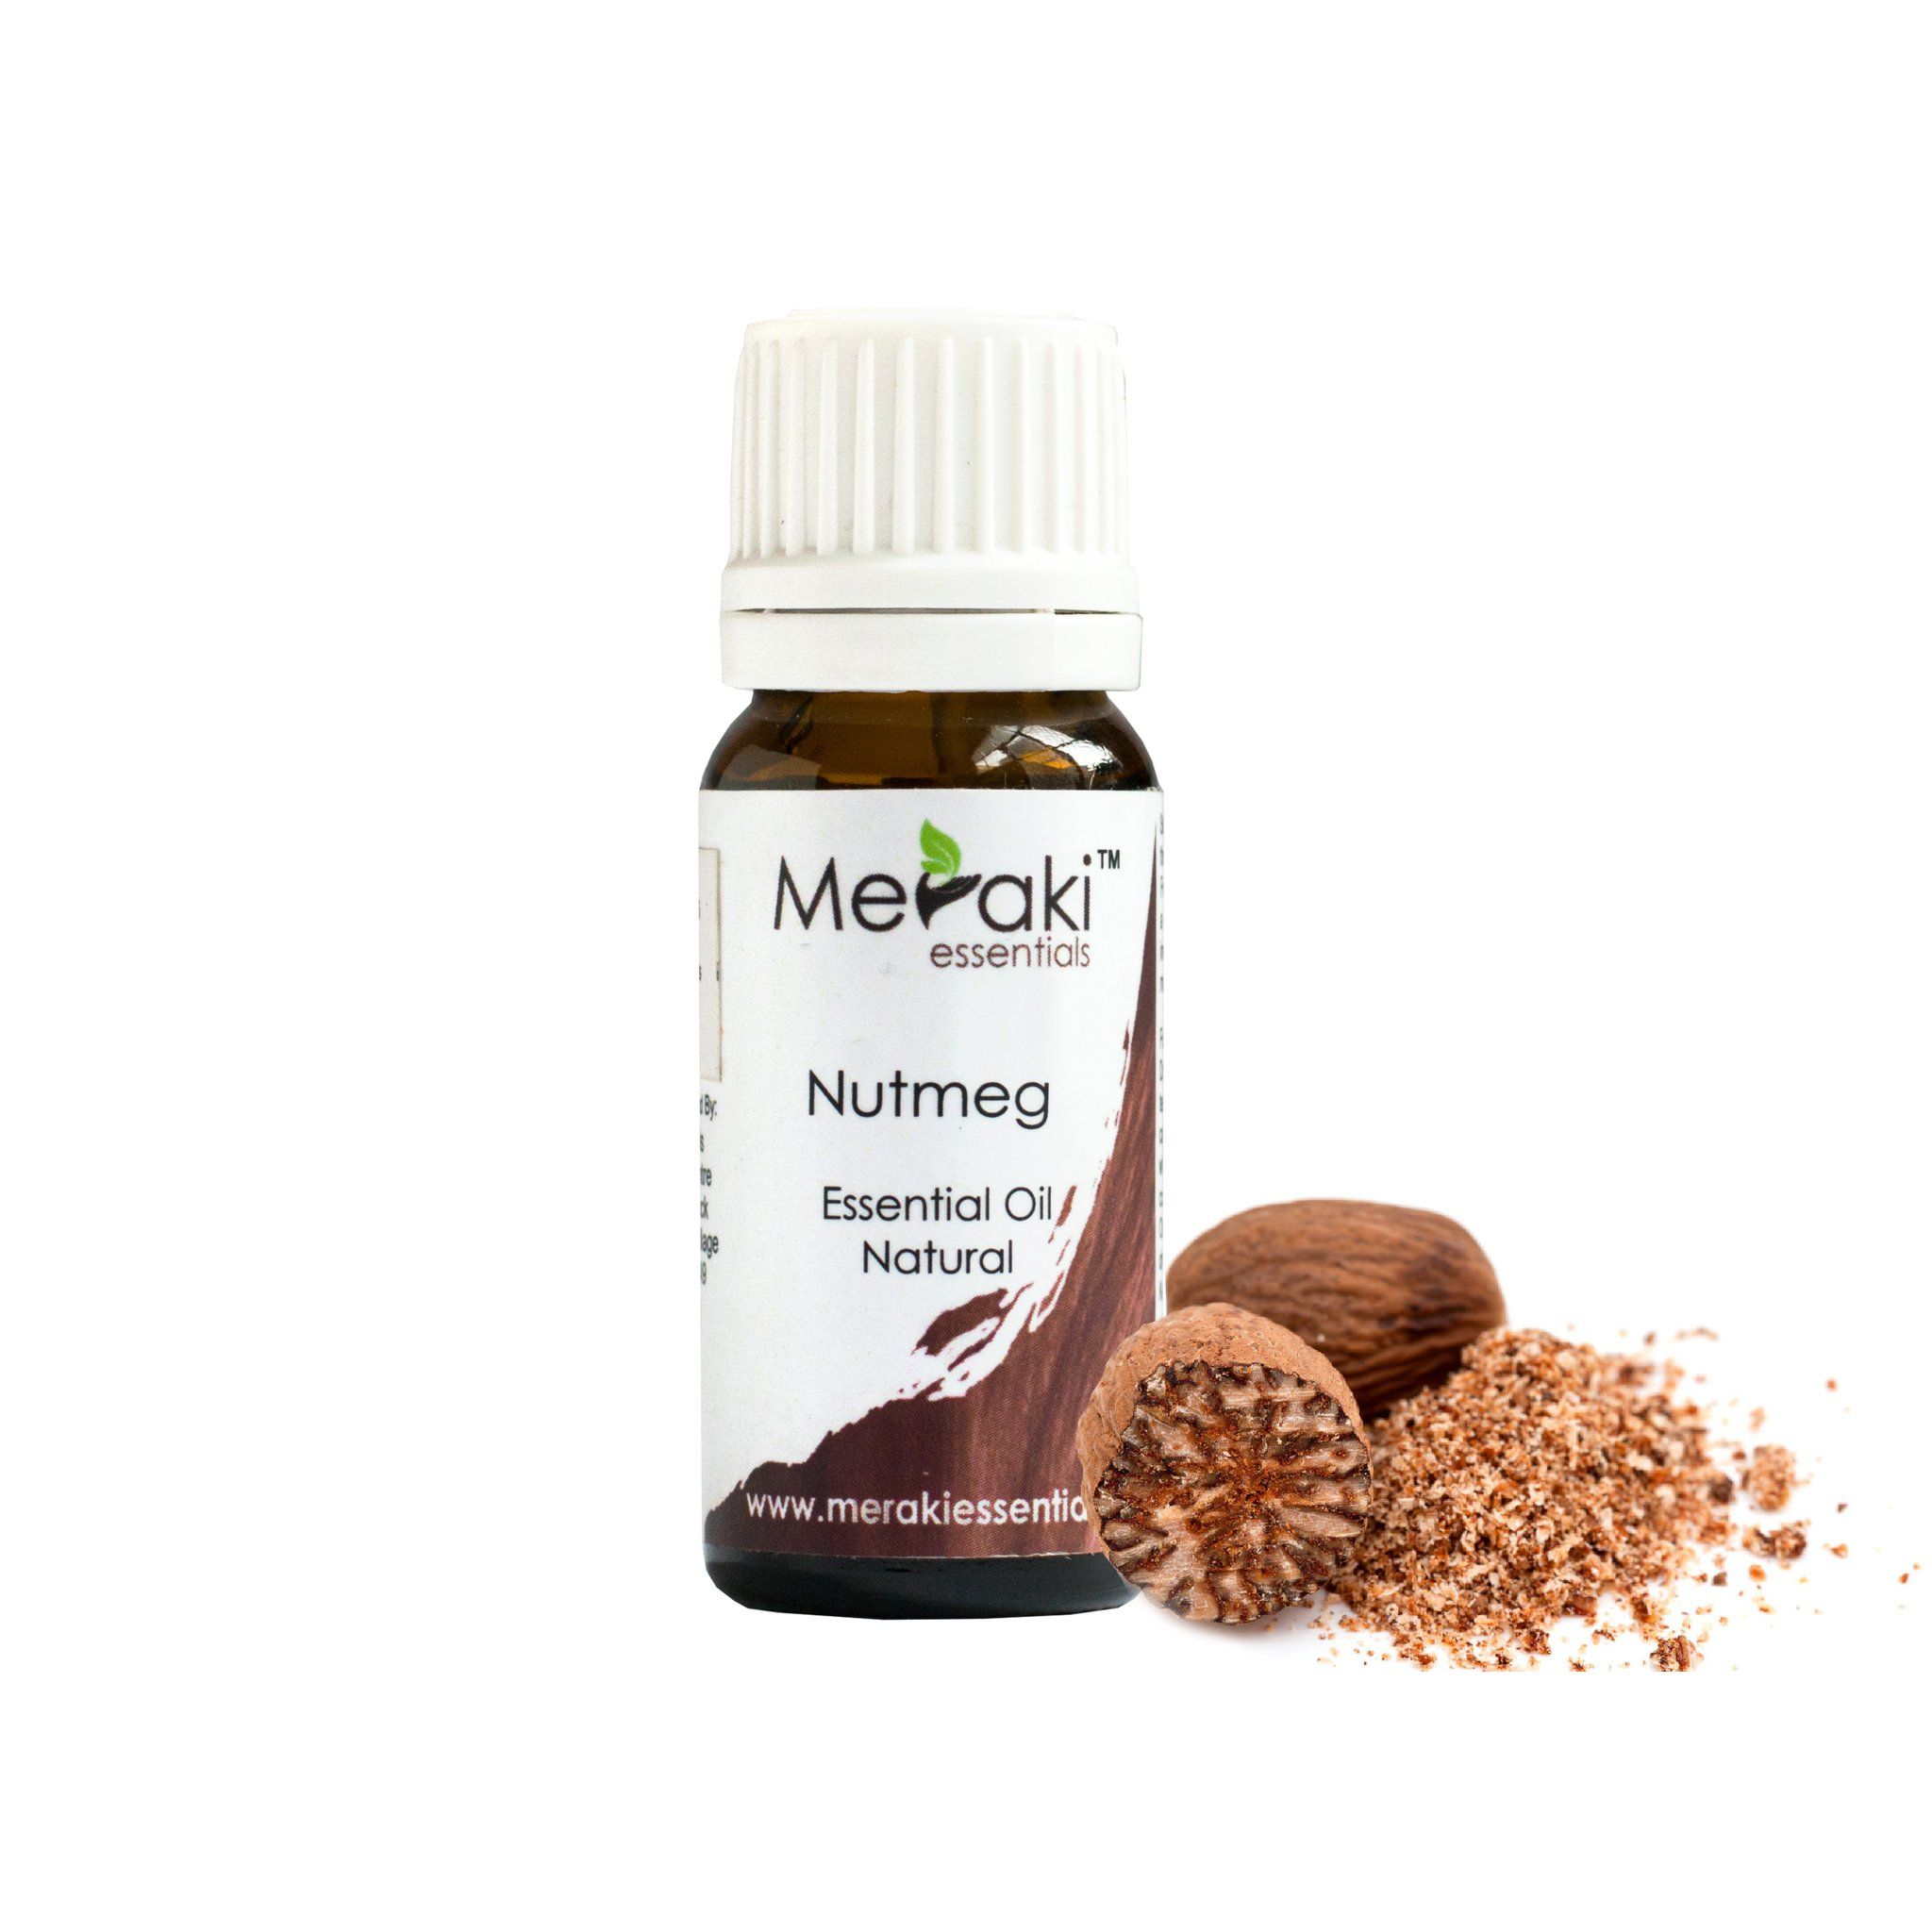 Buy 100% Natural Nutmeg Essential Oil - Meraki Essentials